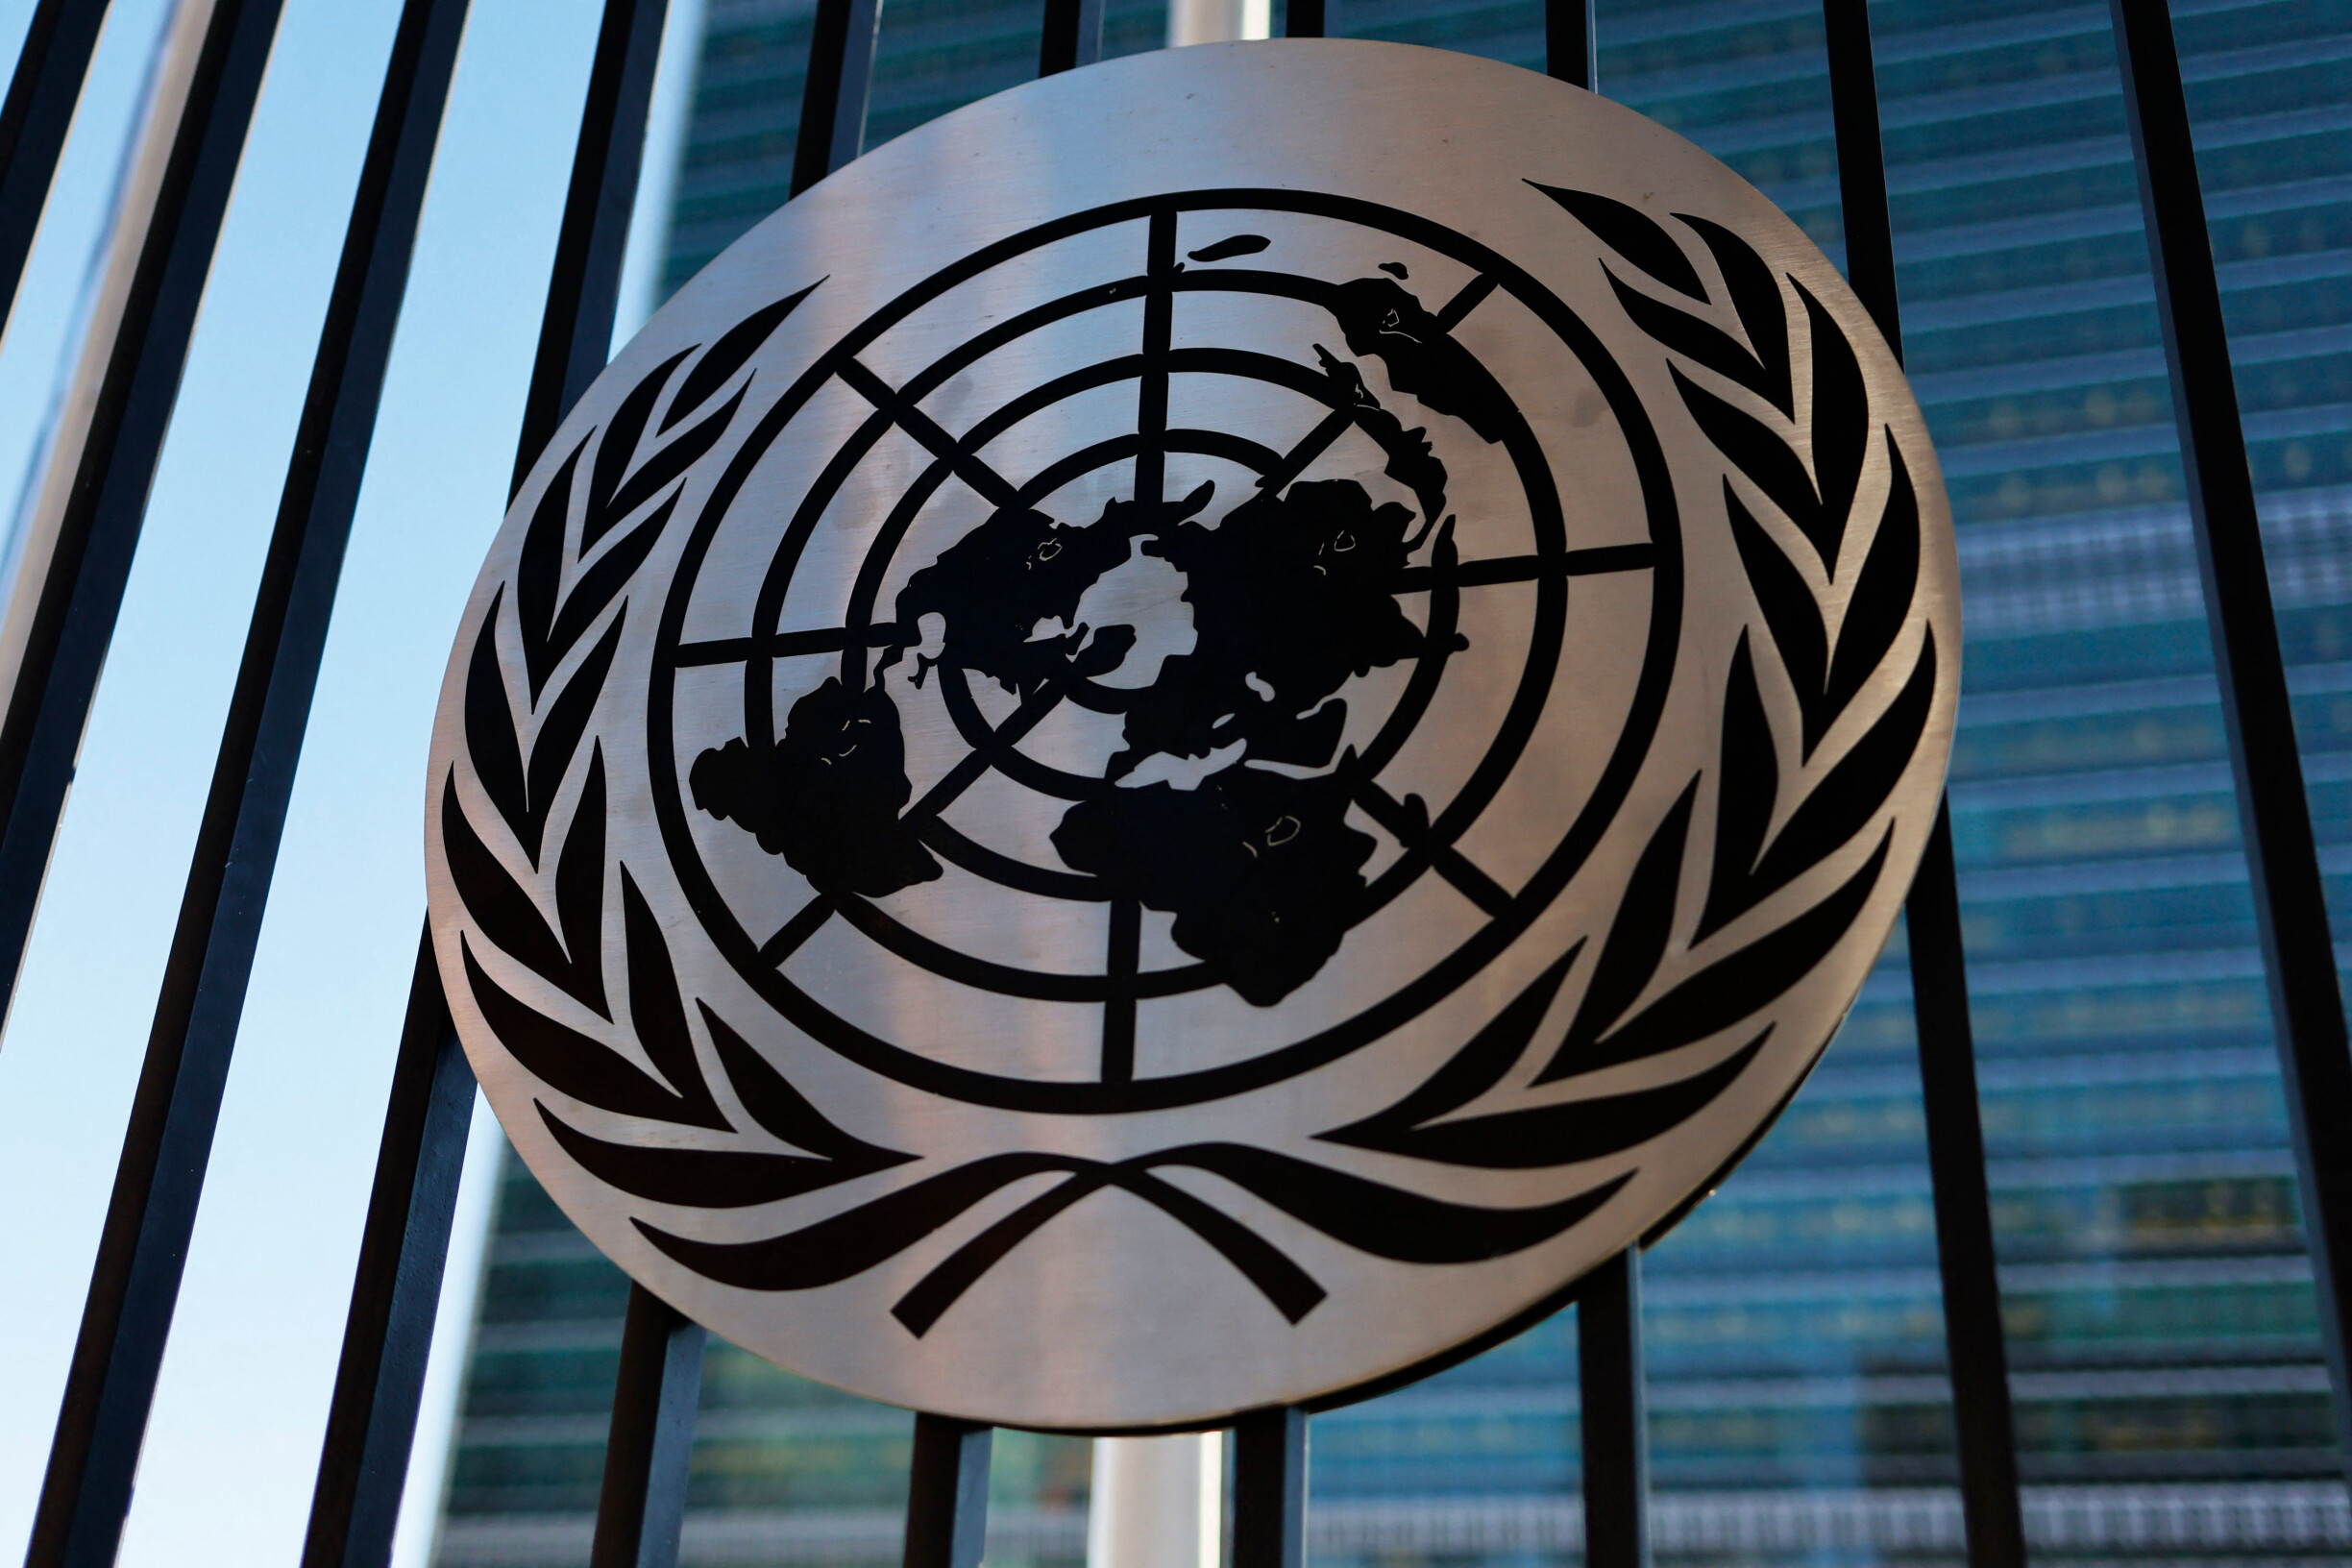 Die Vereinten Nationen reduzieren die Zentralheizung im Hauptquartier aus Geldmangel